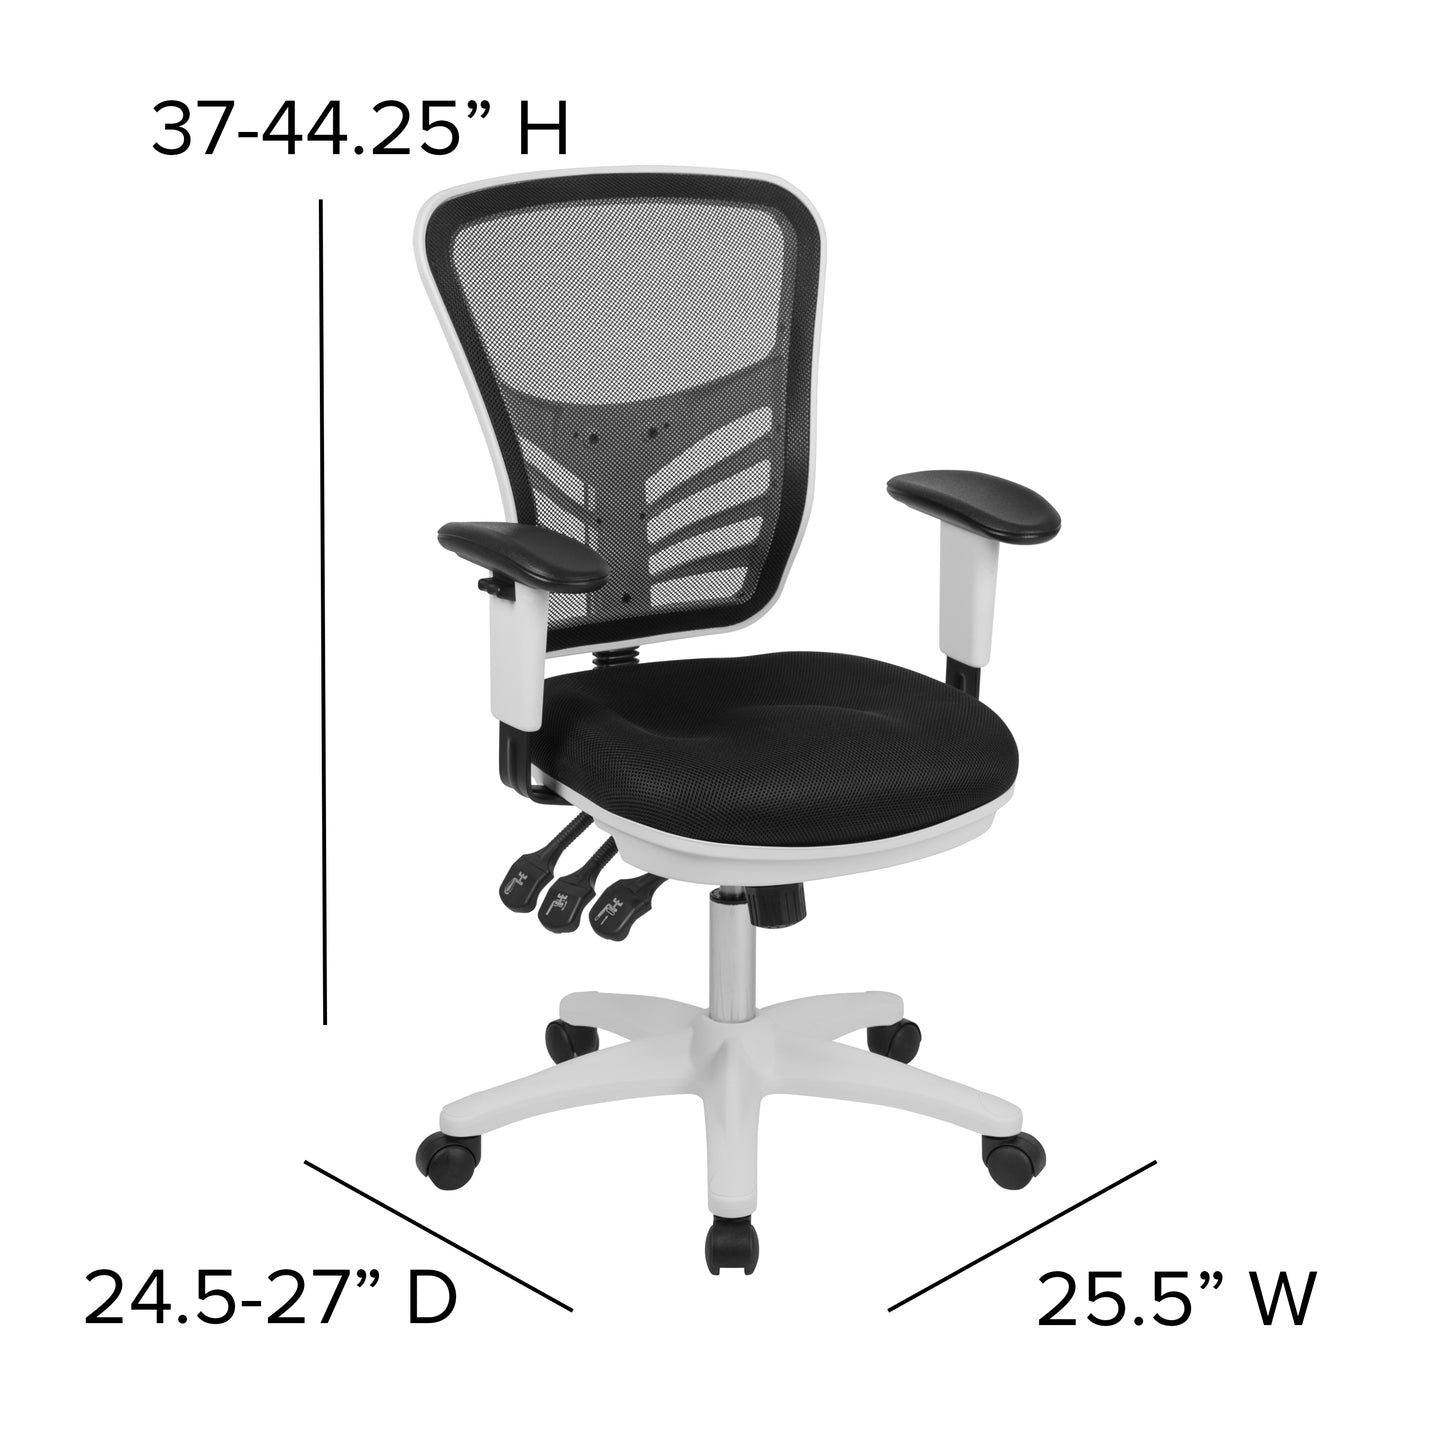 Black/White Mesh Office Chair HL-0001-WH-BK-GG